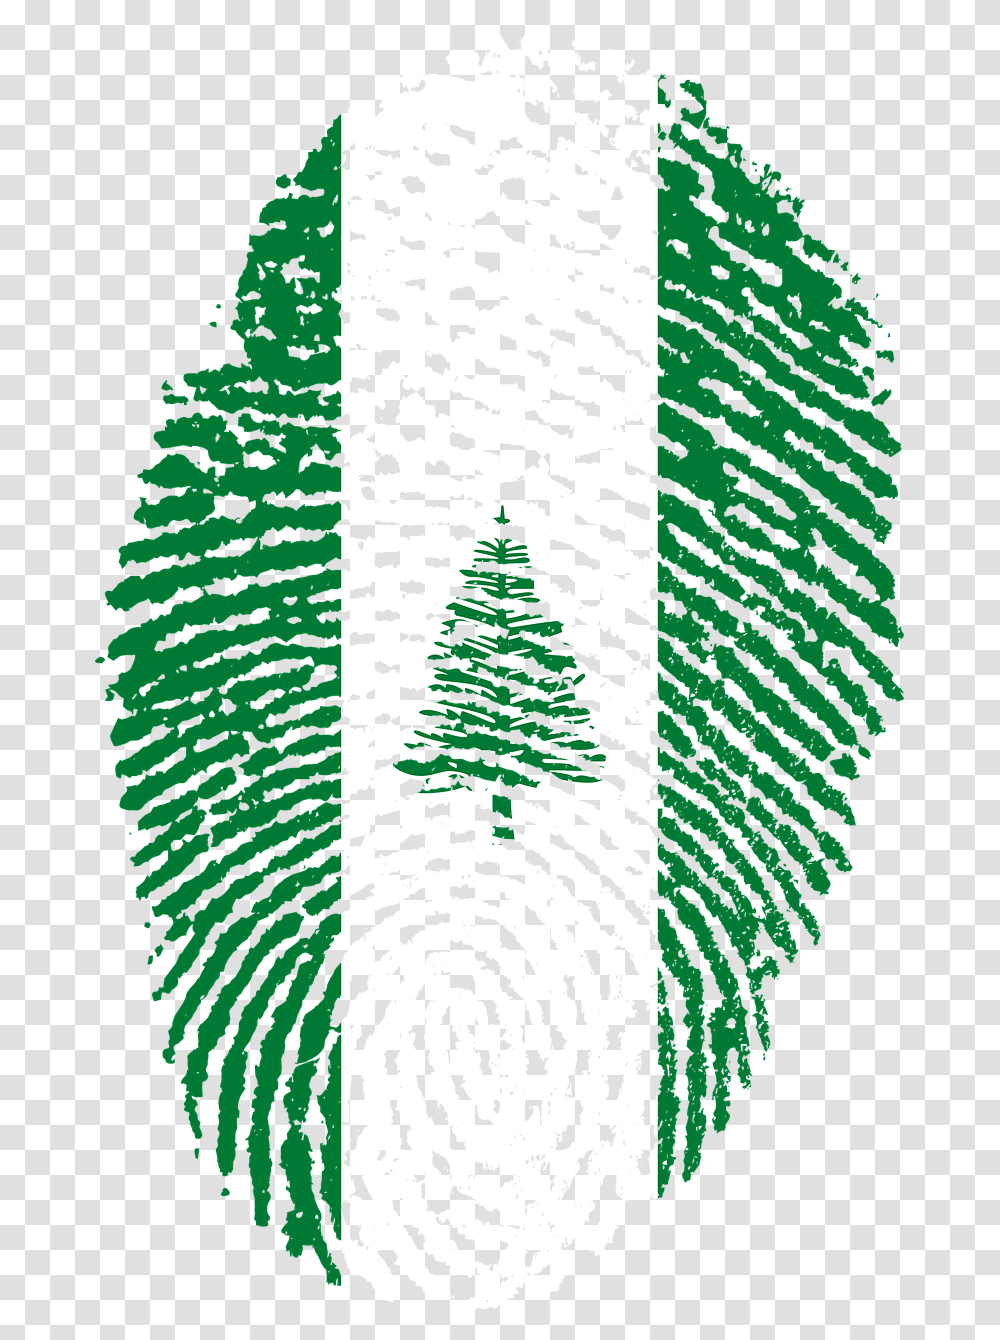 Kuwait Flag Fingerprint, Plant, Tree, Rug Transparent Png